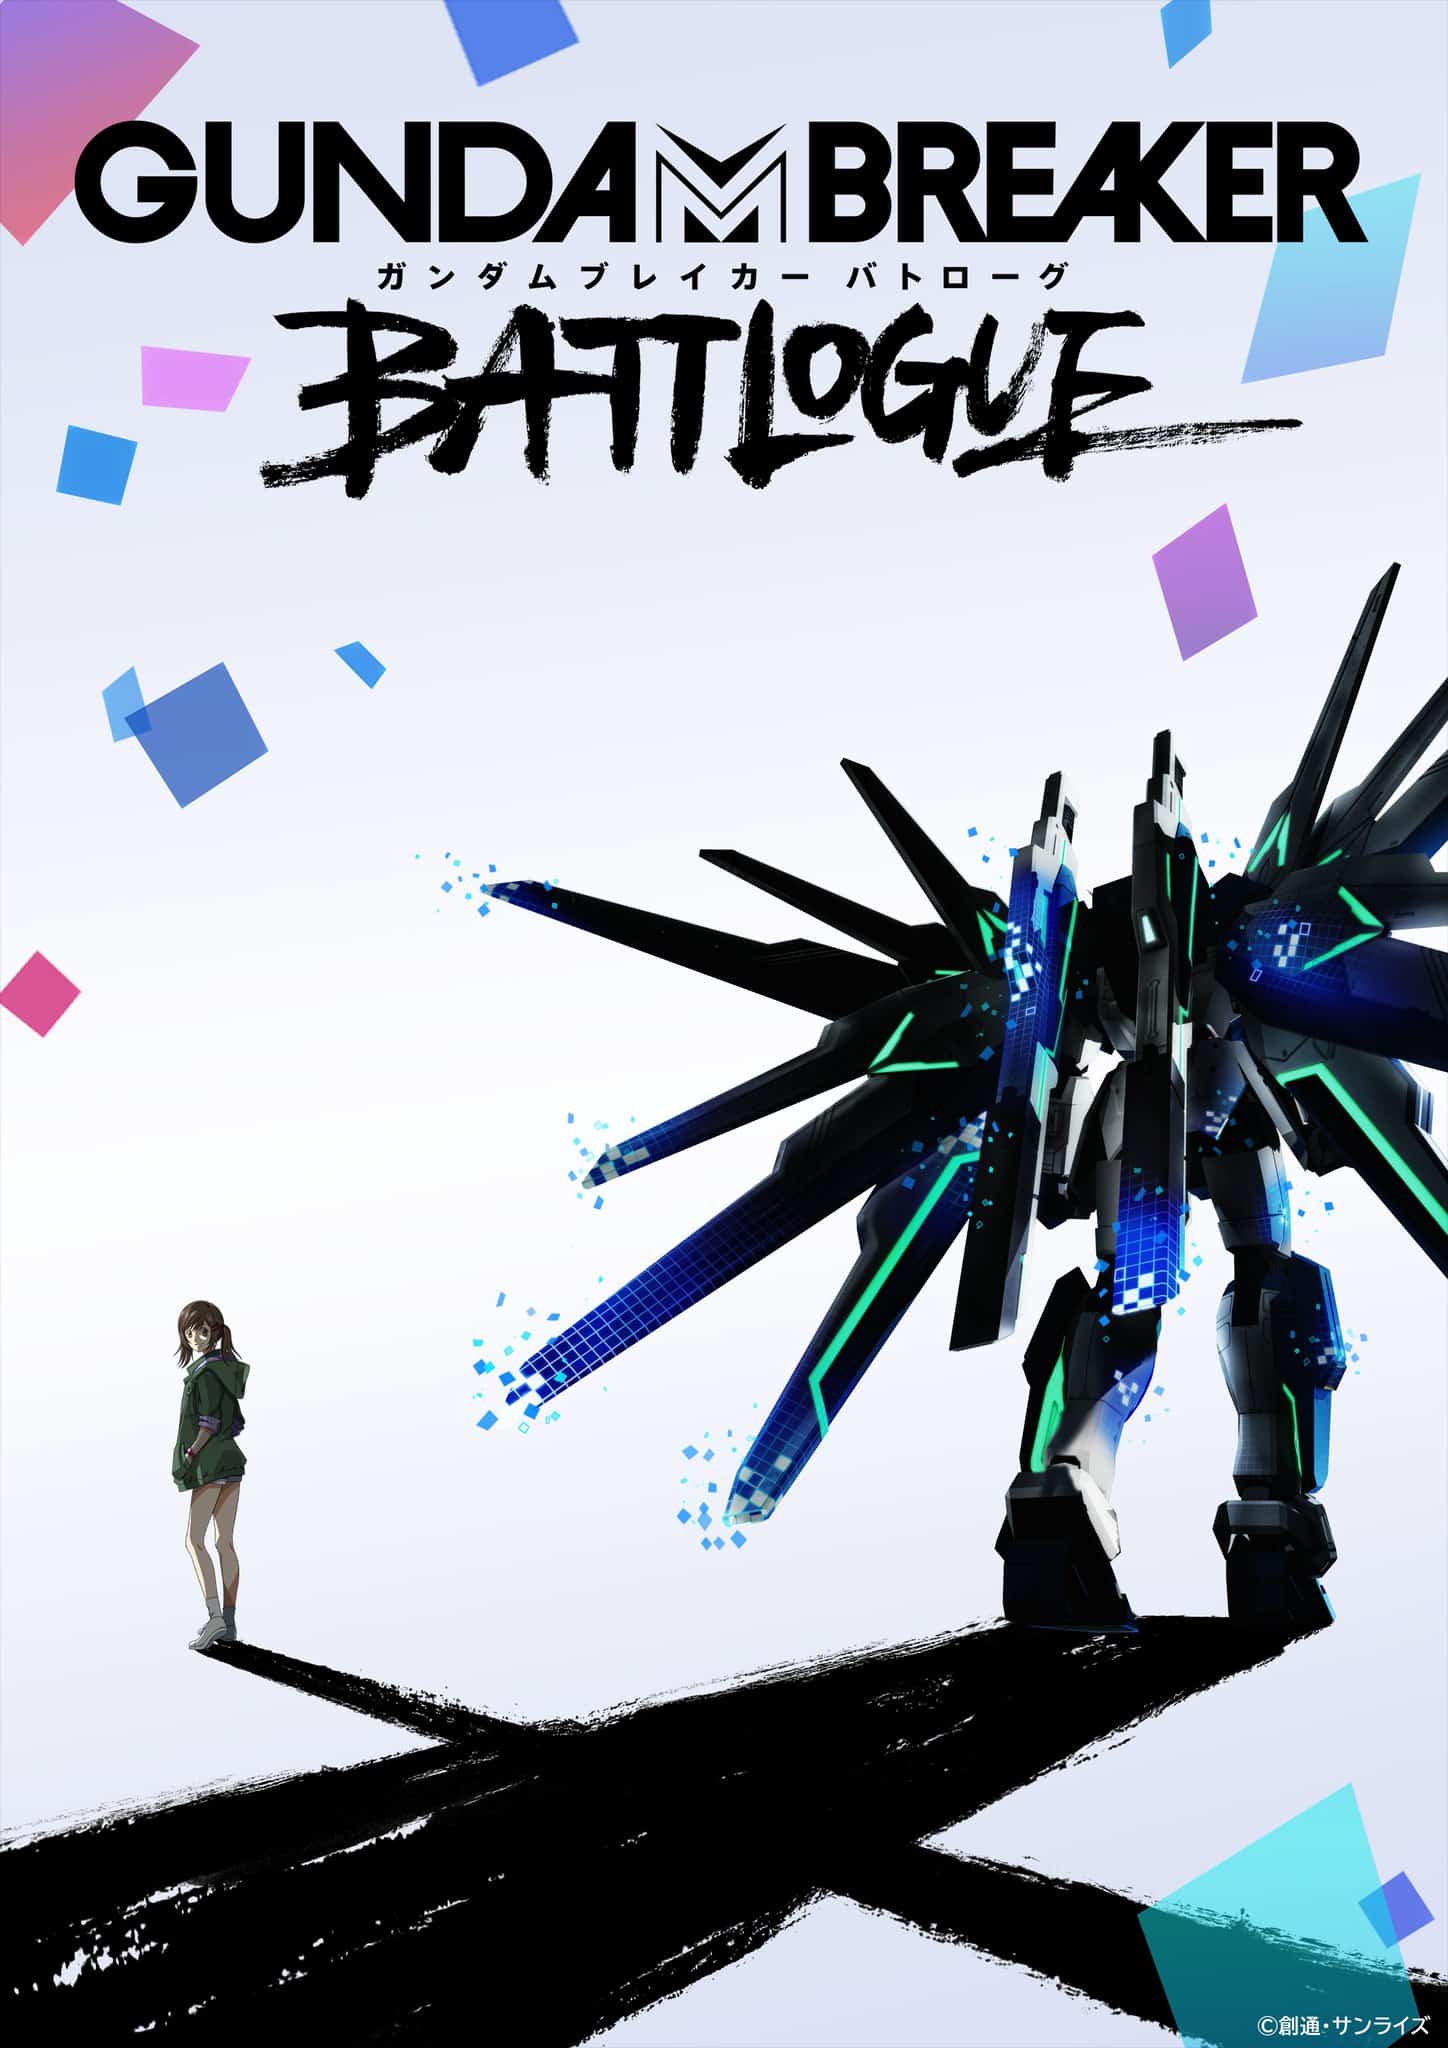 Annonce de anime Gundam Breaker Battlogue